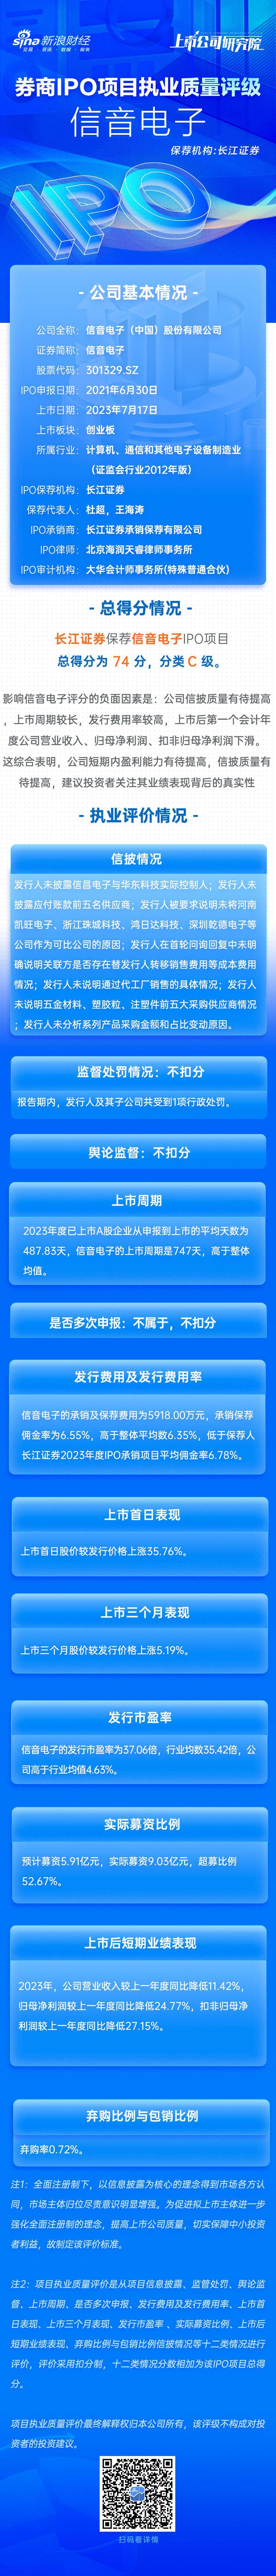 长江证券保荐信音电子IPO项目质量评级C级 排队周期超两年 上市首年业绩“变脸”